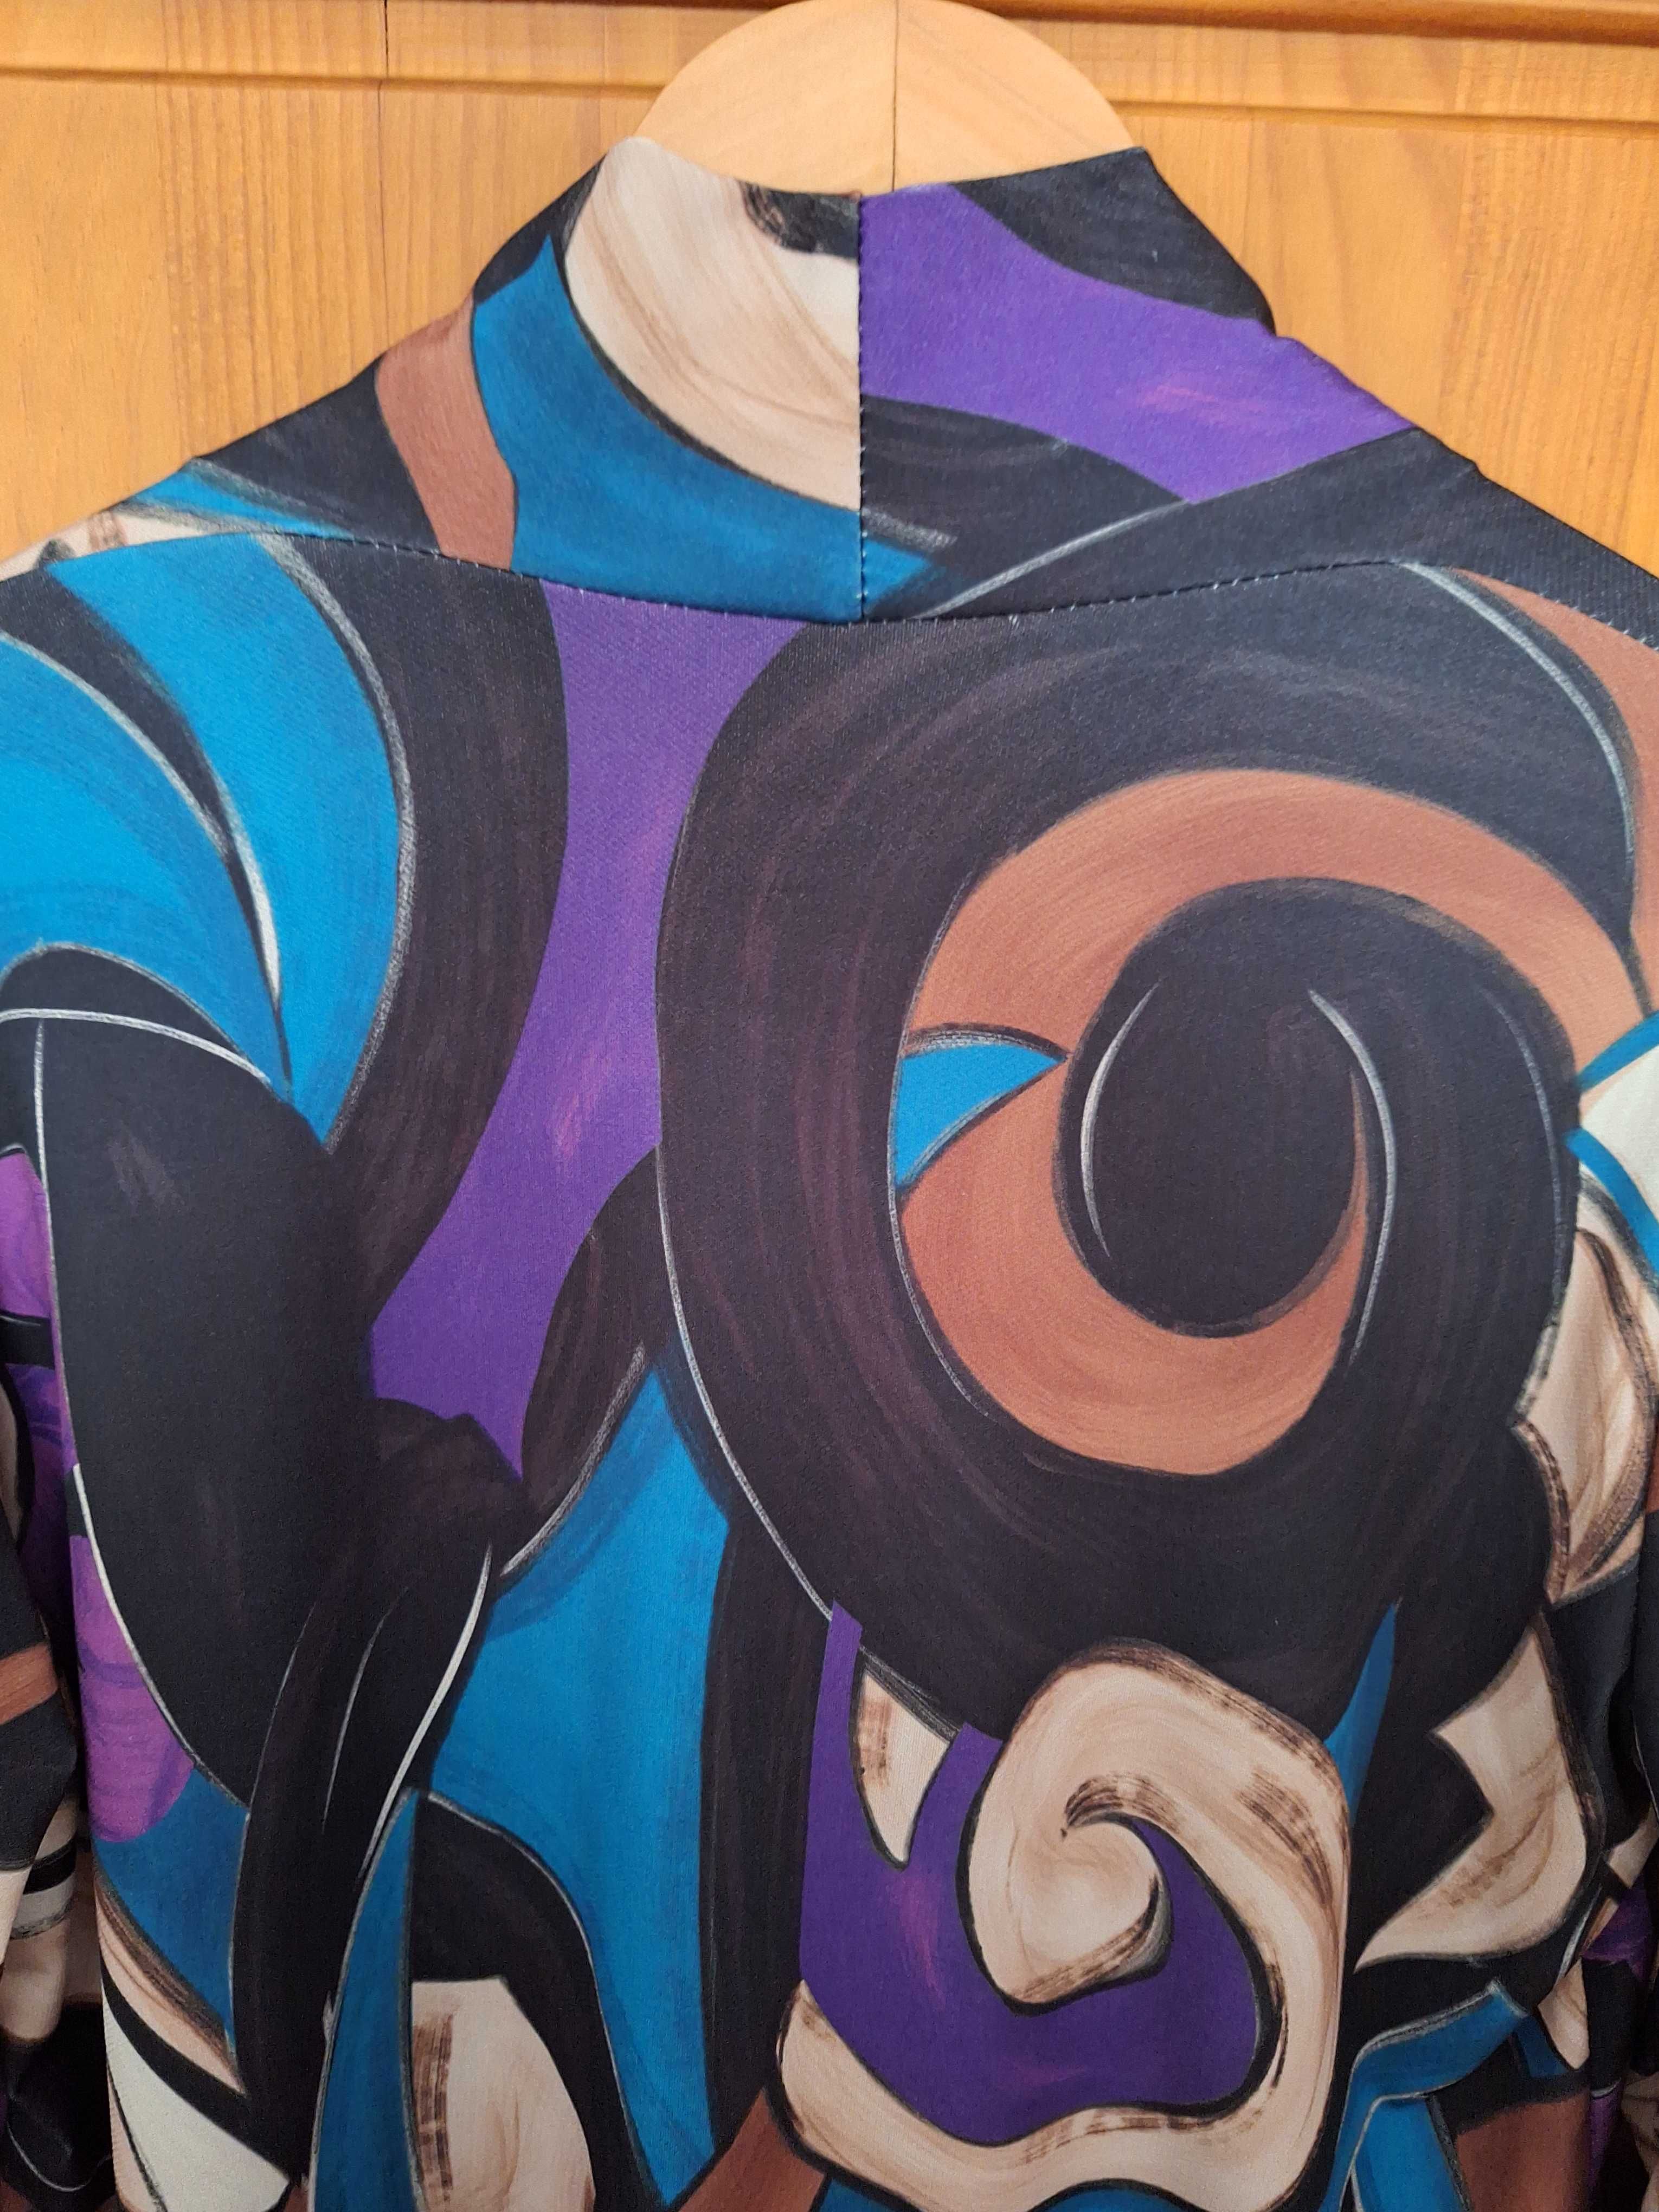 Blusa vintage com padrão colorido, muito bonito e original